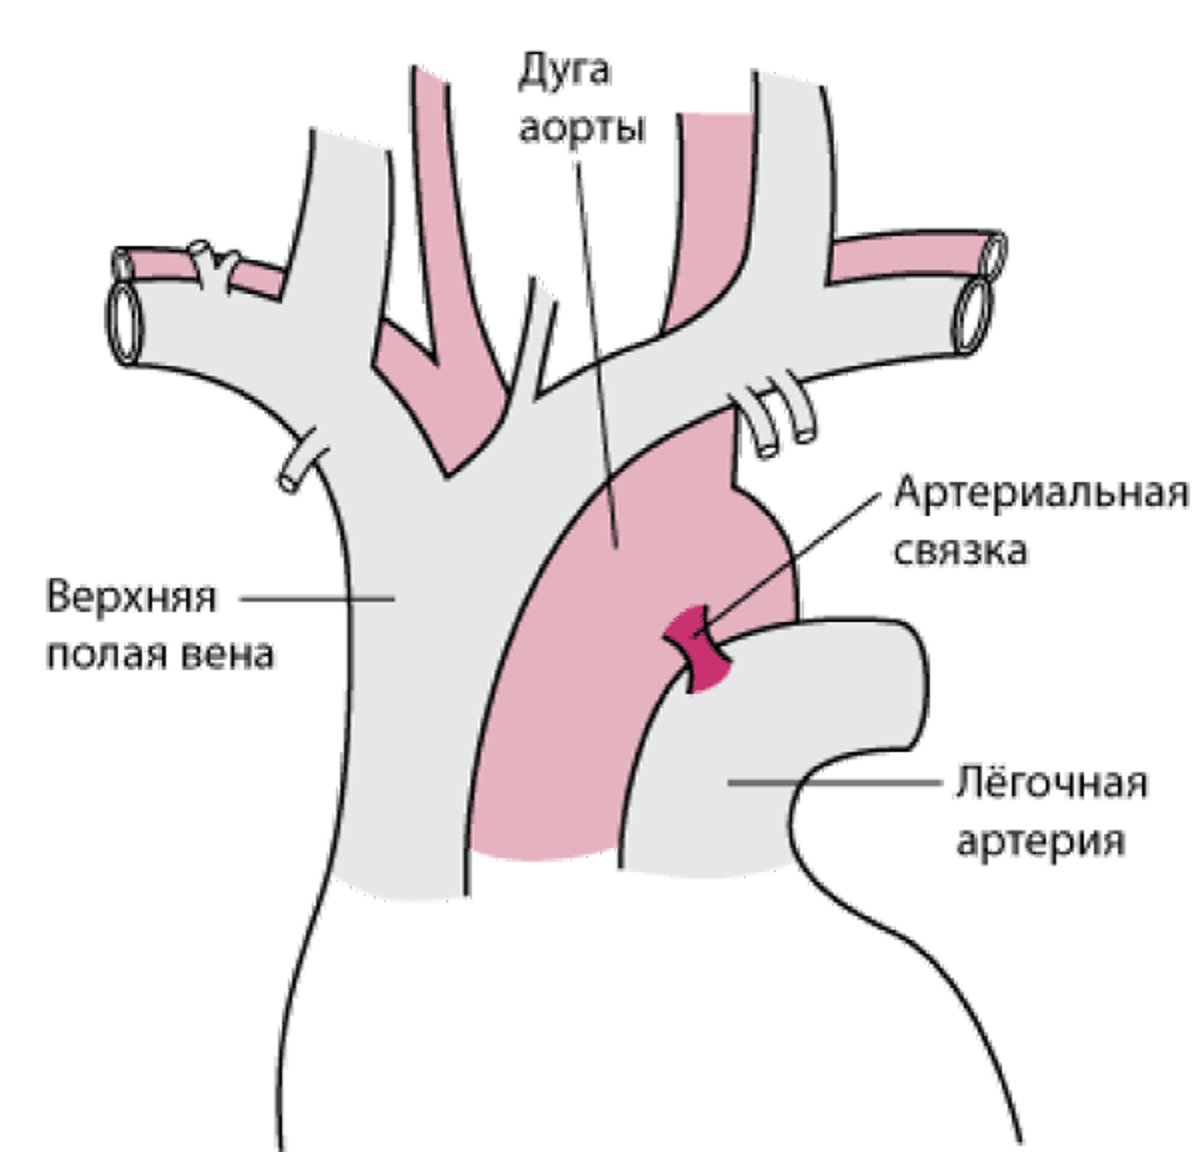 Большинство частичных разрывов аорты происходит в области артериальной связки